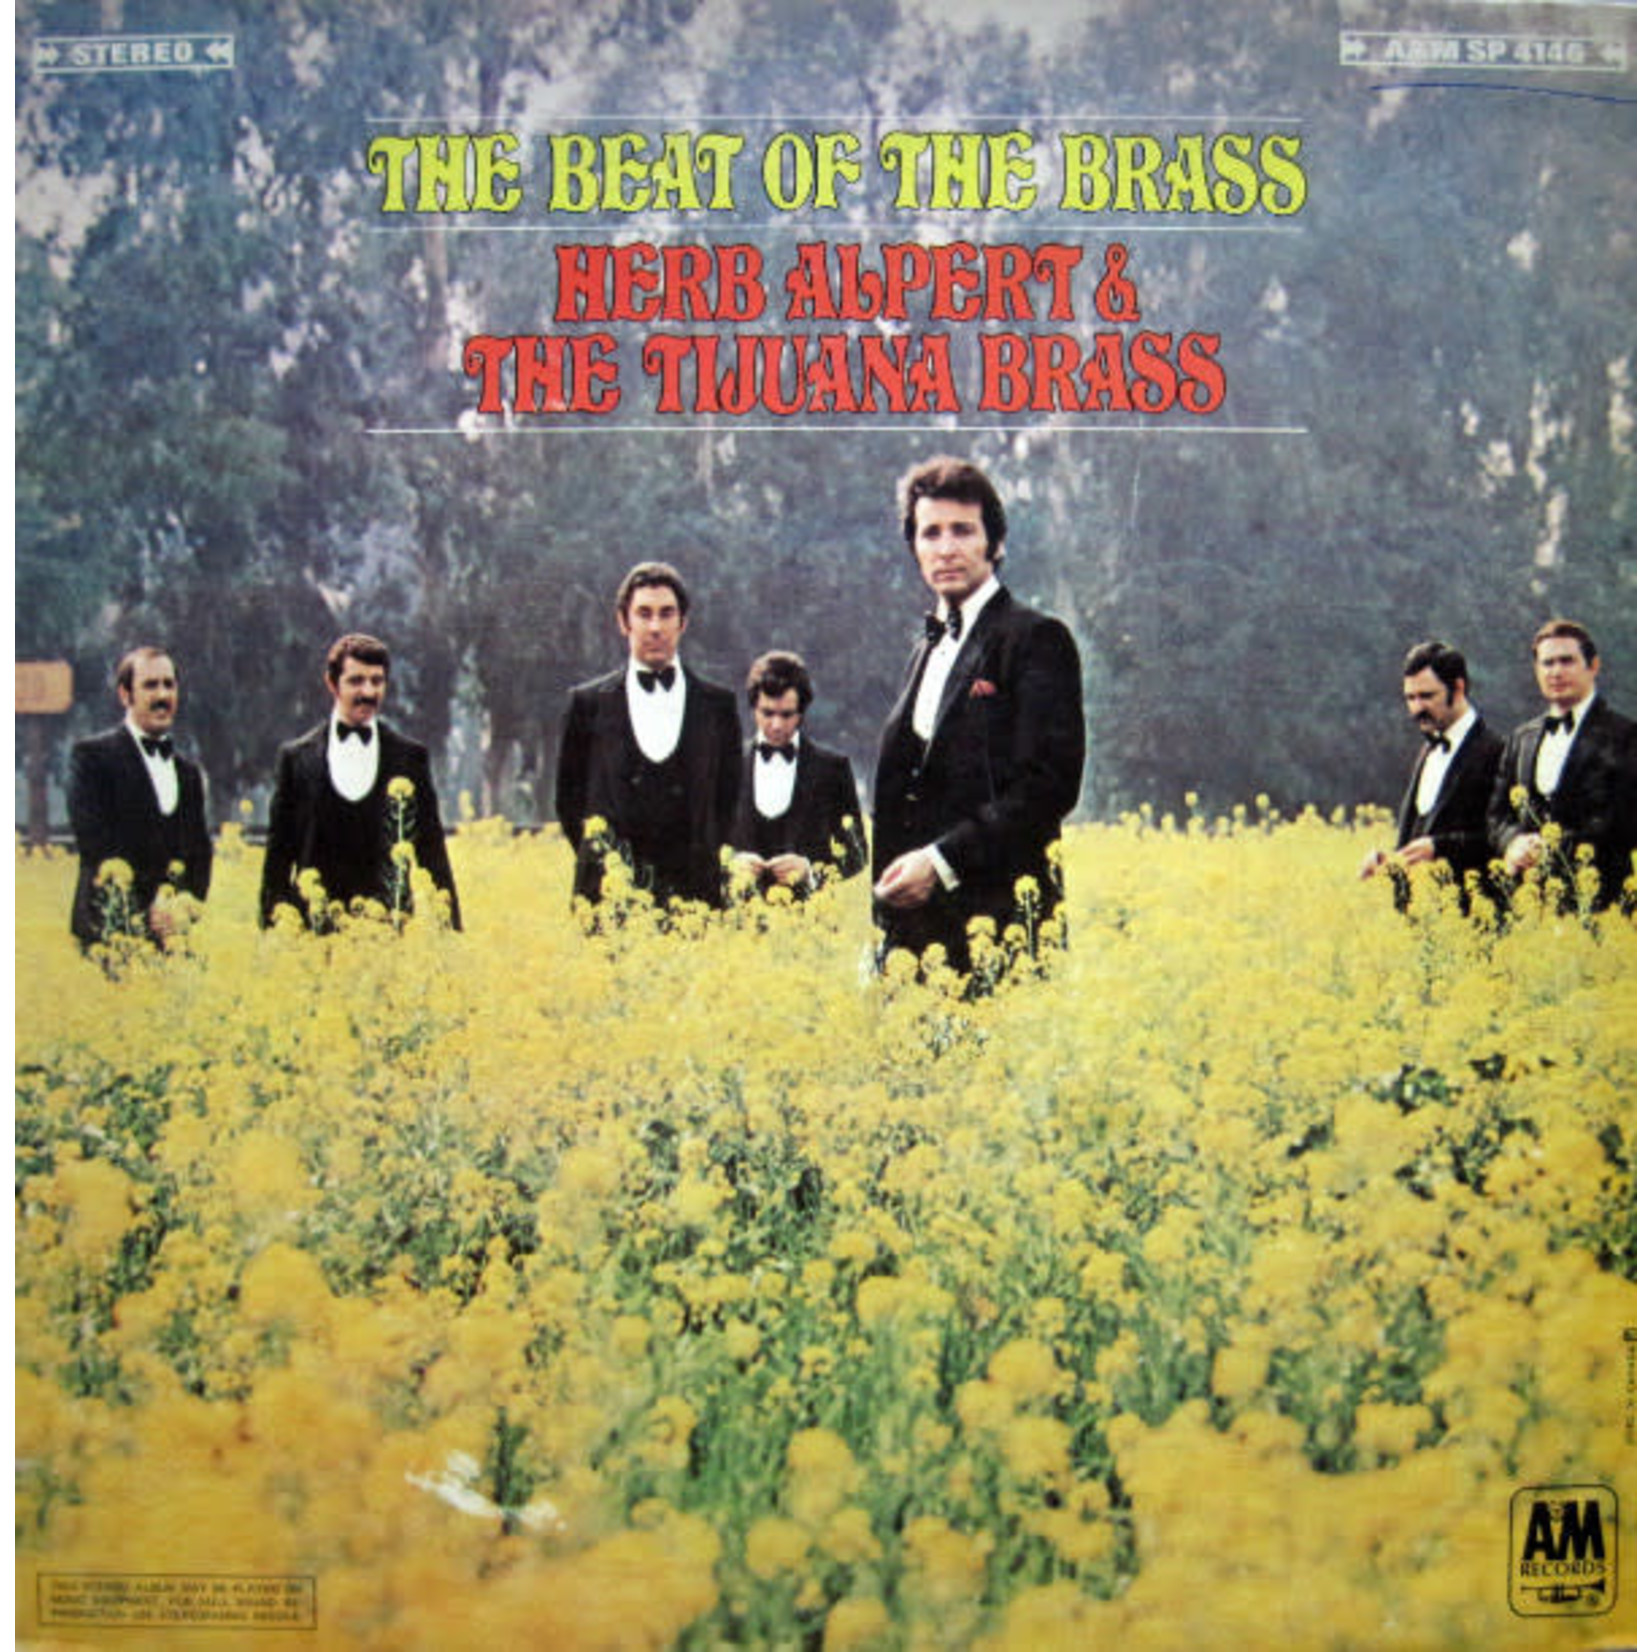 Herb Alpert Herb Alpert & The Tijuana Brass – The Beat Of The Brass (VG, 1968, LP, Gatefold, A&M Records – SP 4146, Canada)